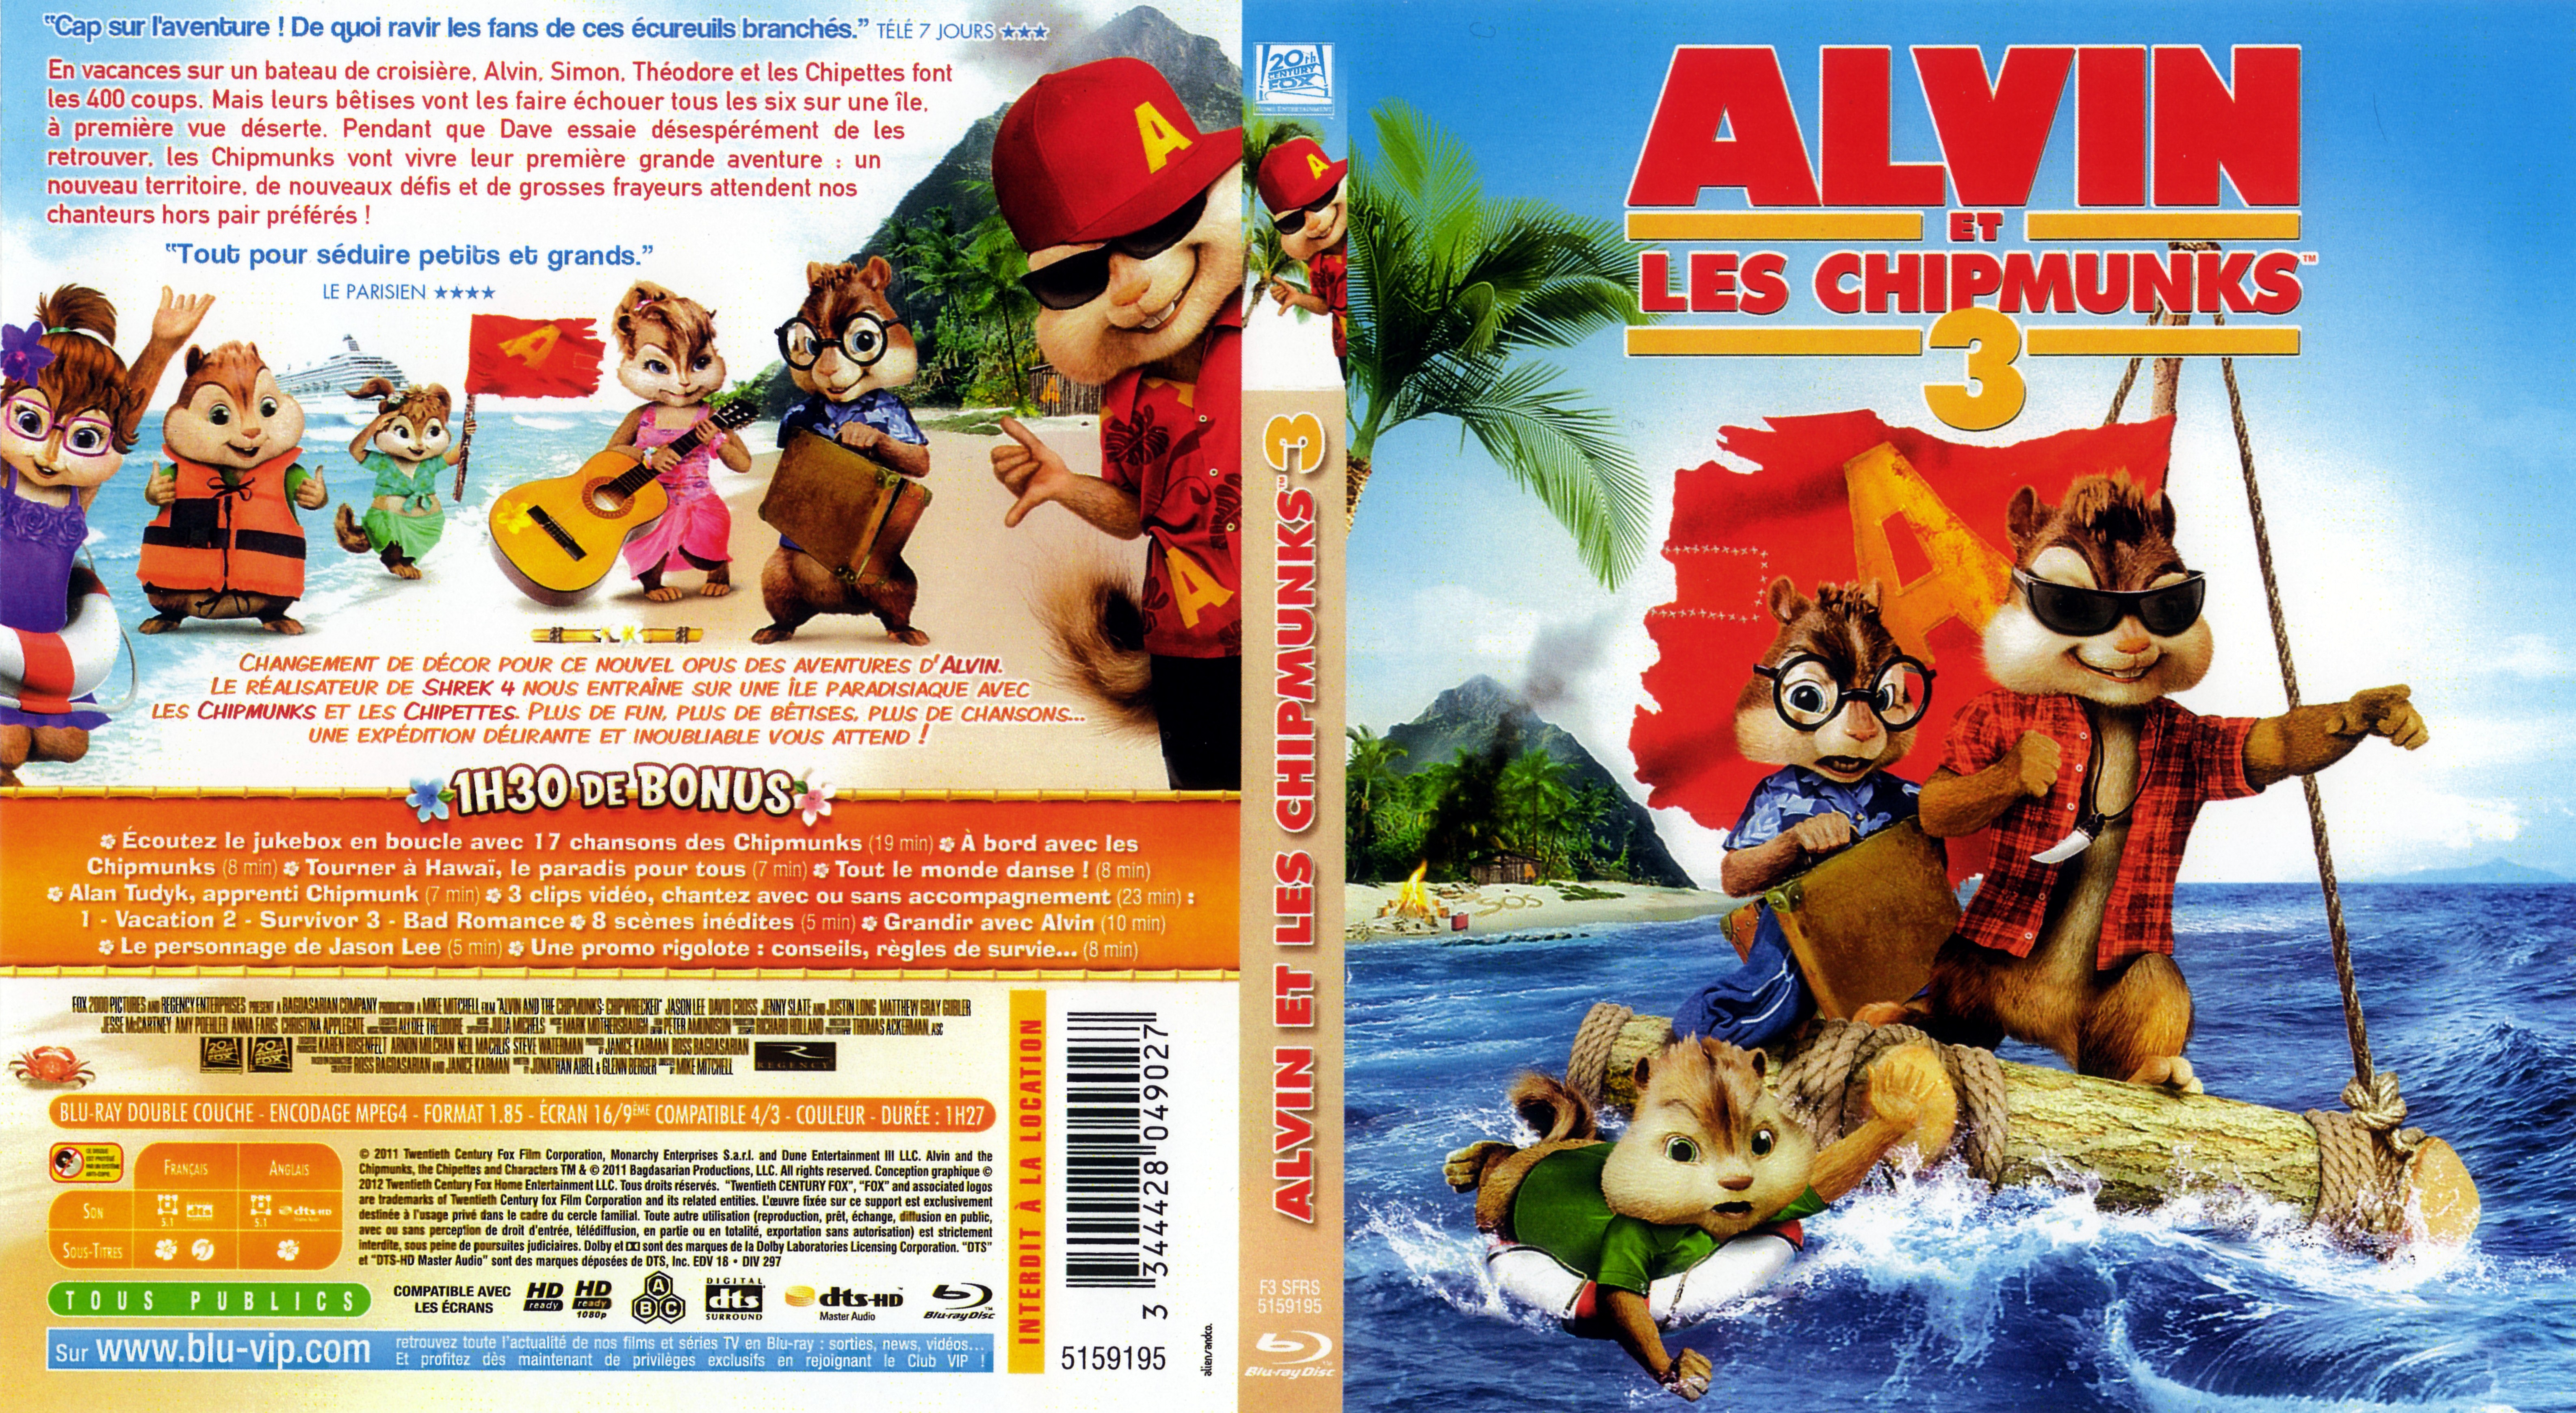 Jaquette DVD Alvin et les Chipmunks 3 (BLU-RAY)